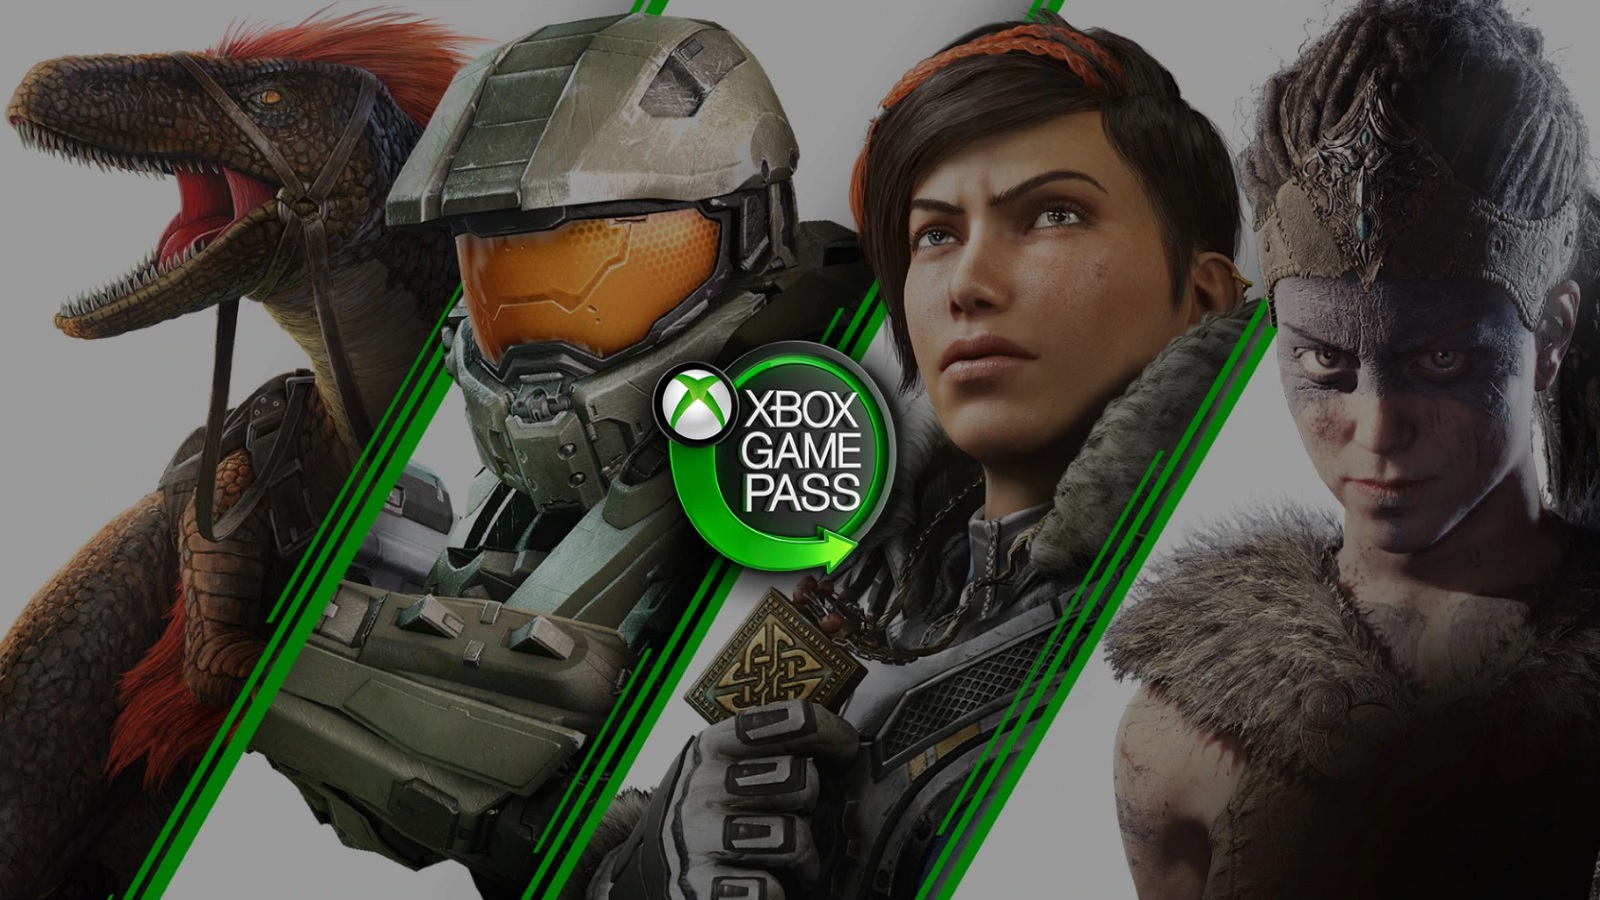 Xbox Game Pass : nouvel arrivage en janvier avec PES 2021, Injustice 2 et bien d'autres